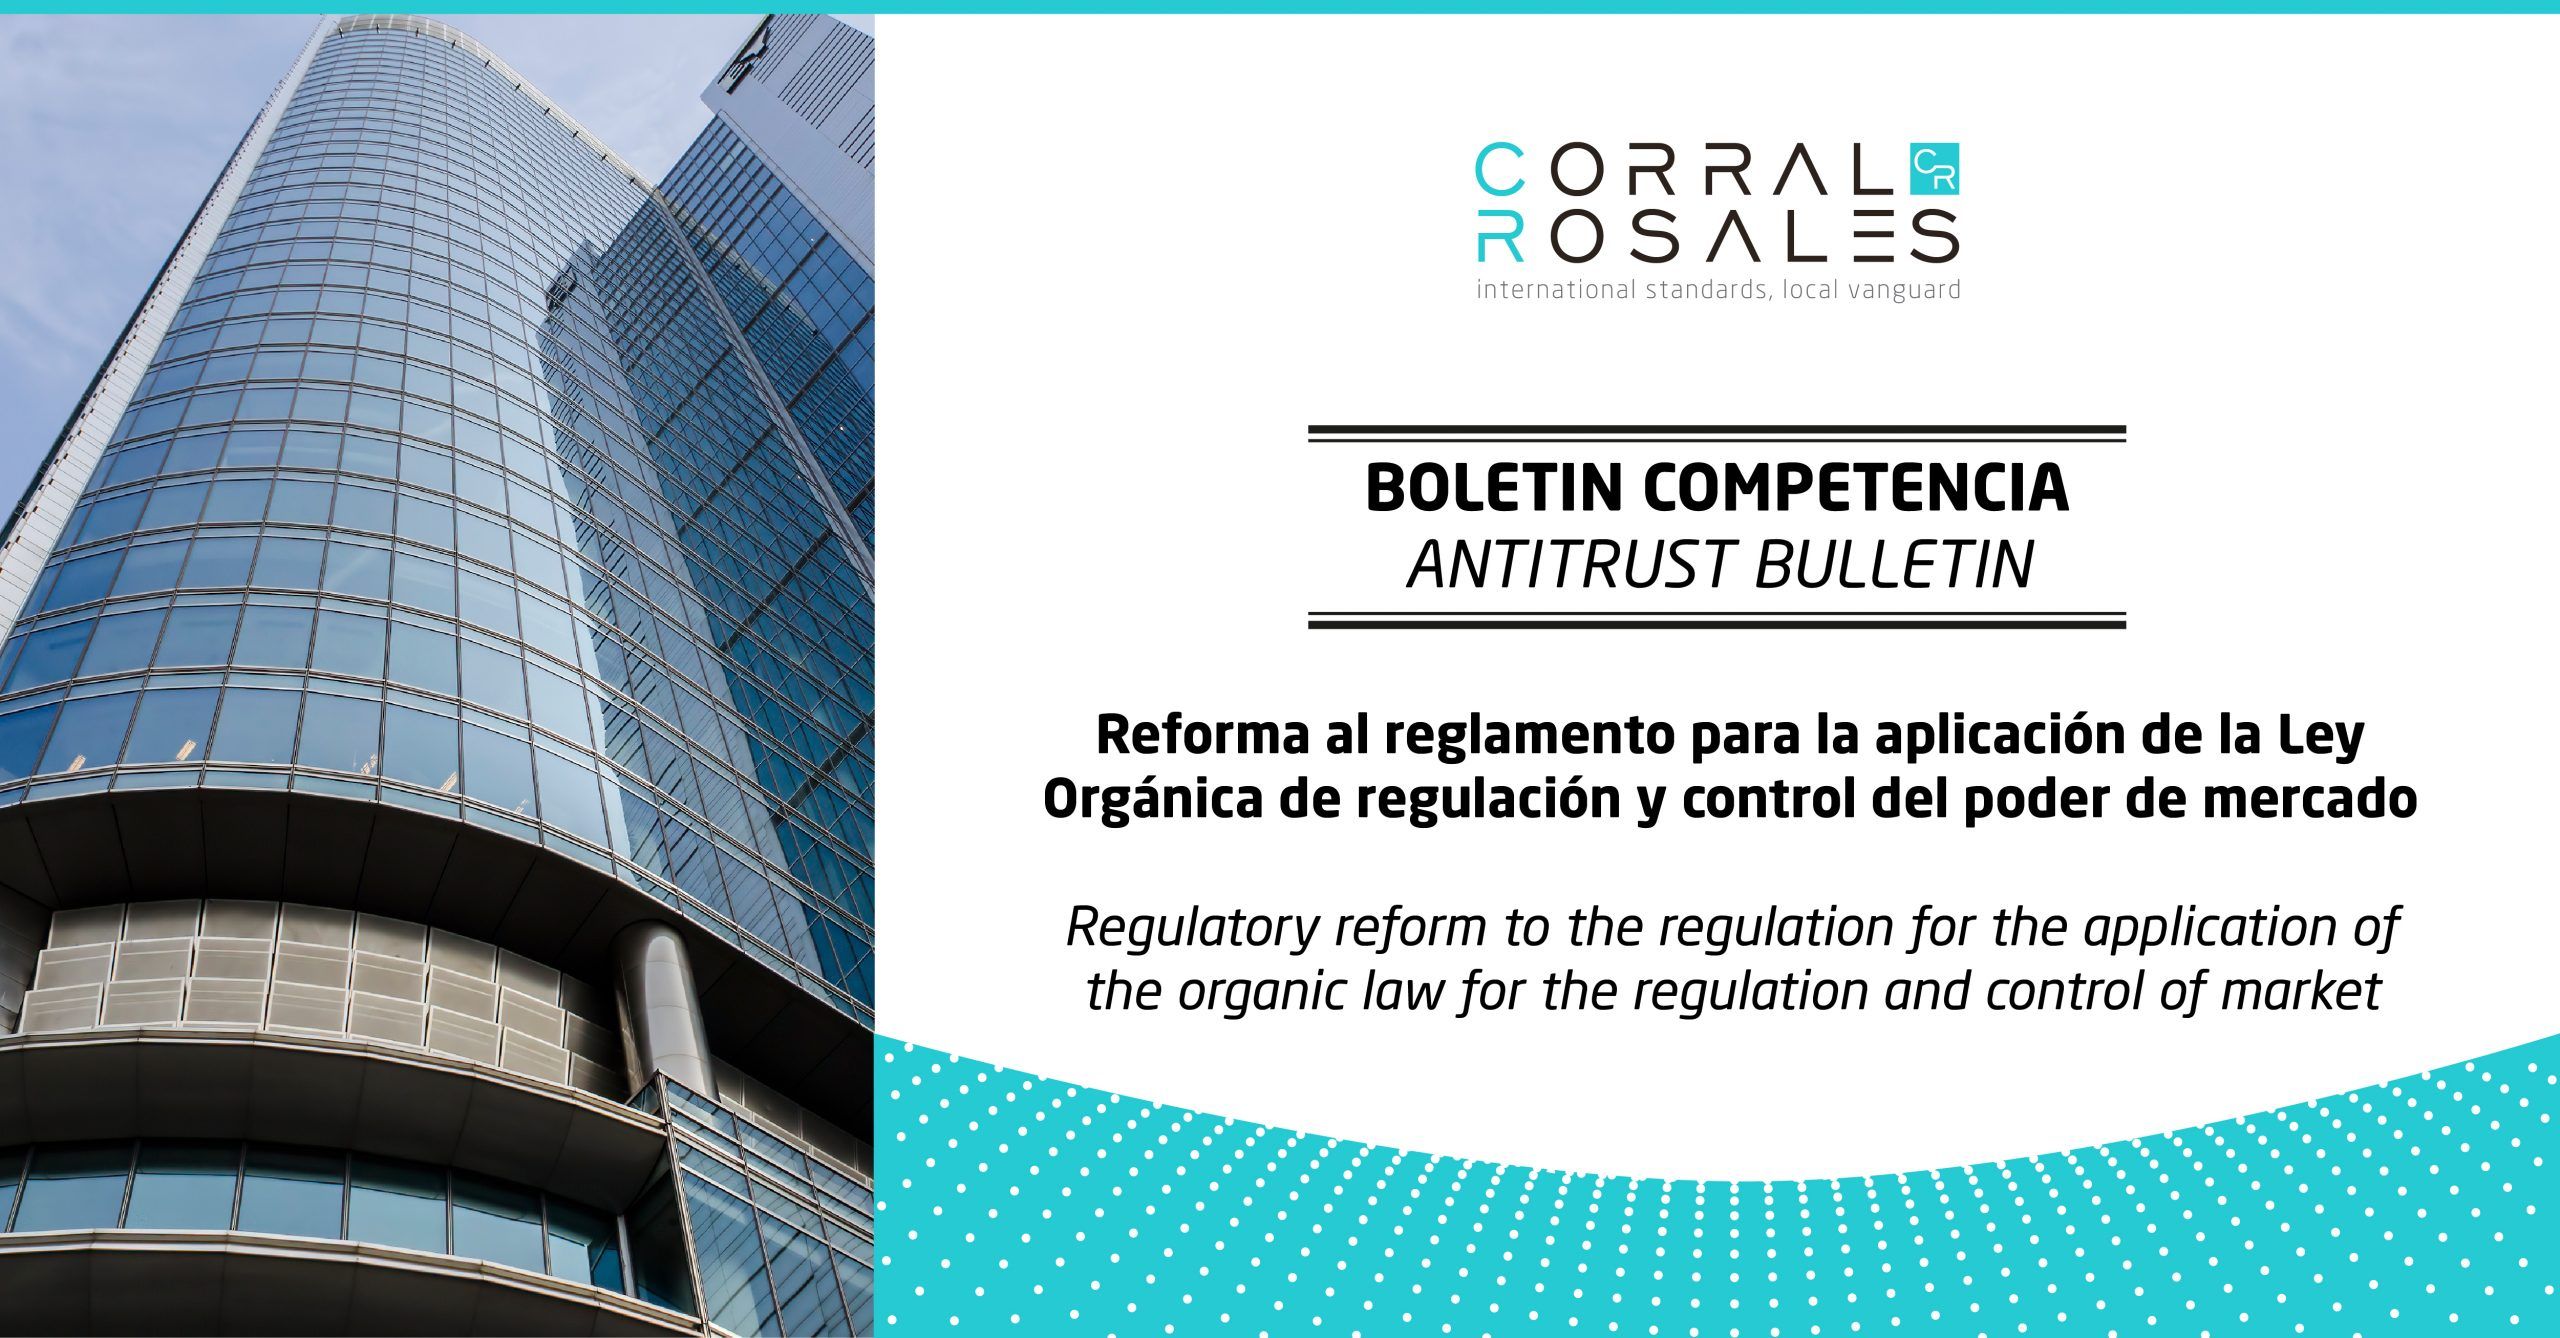 corral-rosales-abogados-ecuador-reforma-al-reglamento-para-la-aplicacion-de-la-ley-organica-de-regulacion-y-control-del-poder-de-mercado